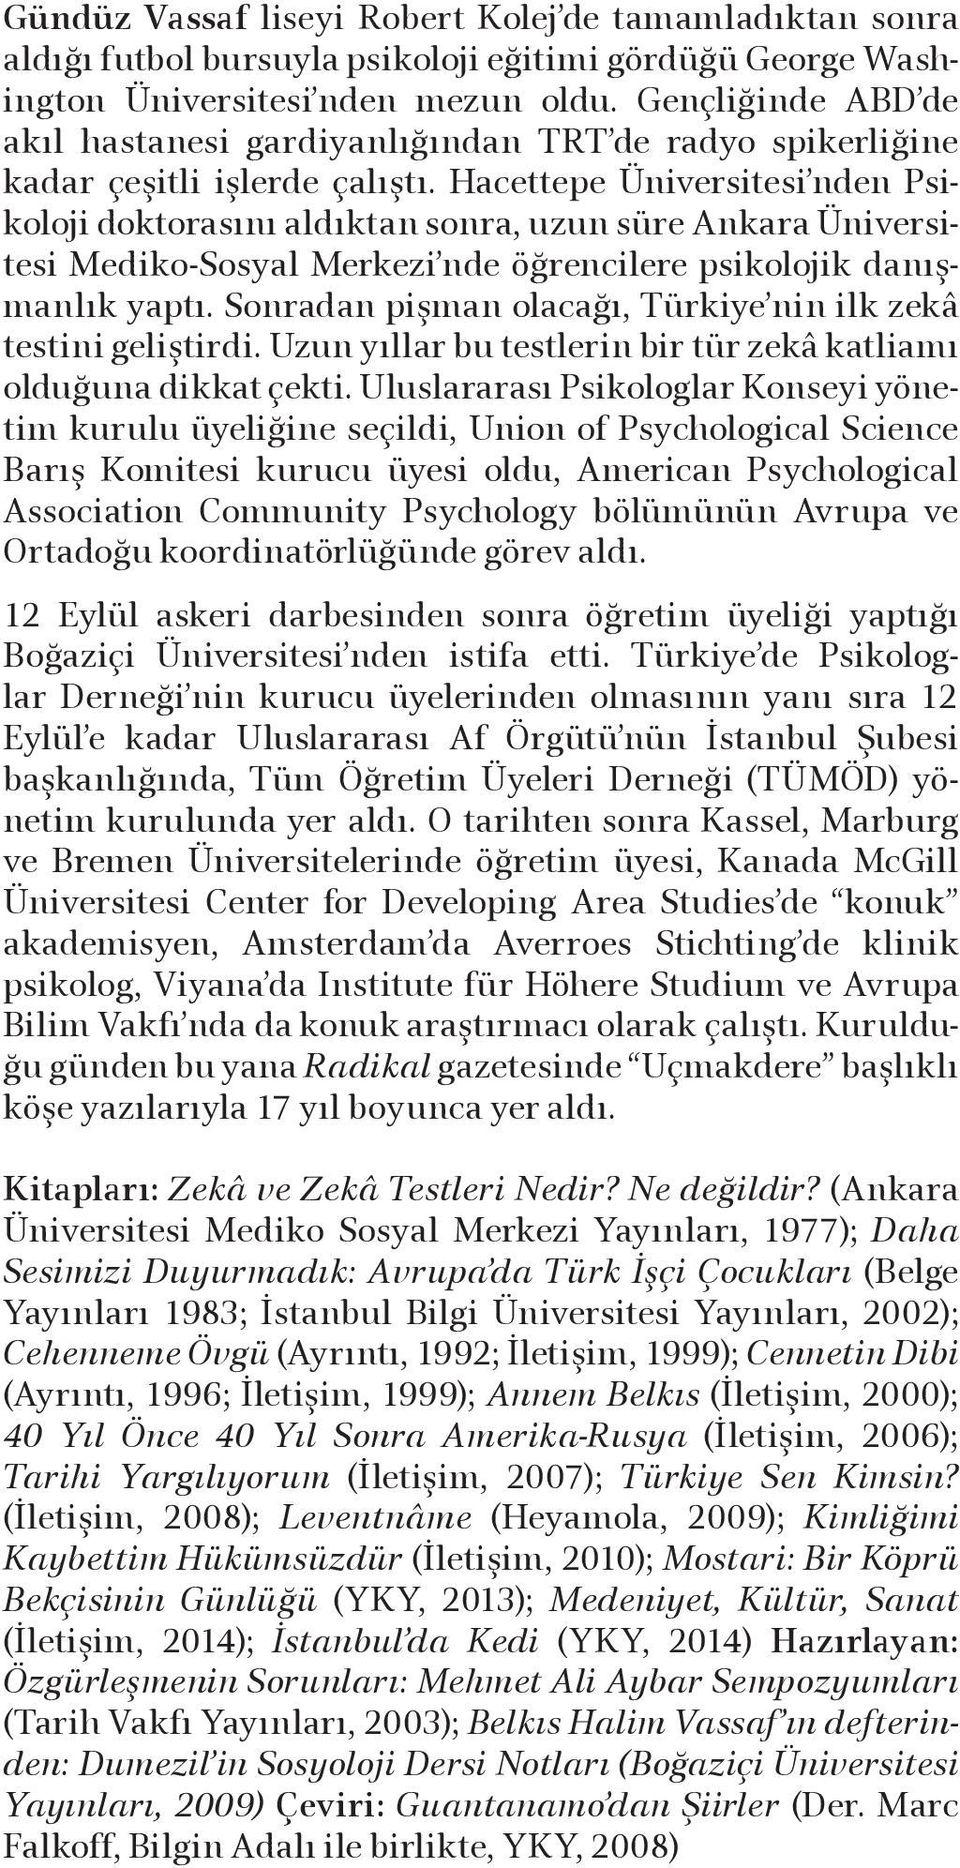 Hacettepe Üniversitesi nden Psikoloji doktorasını aldıktan sonra, uzun süre Ankara Üniversitesi Mediko-Sosyal Merkezi nde öğrencilere psikolojik danışmanlık yaptı.